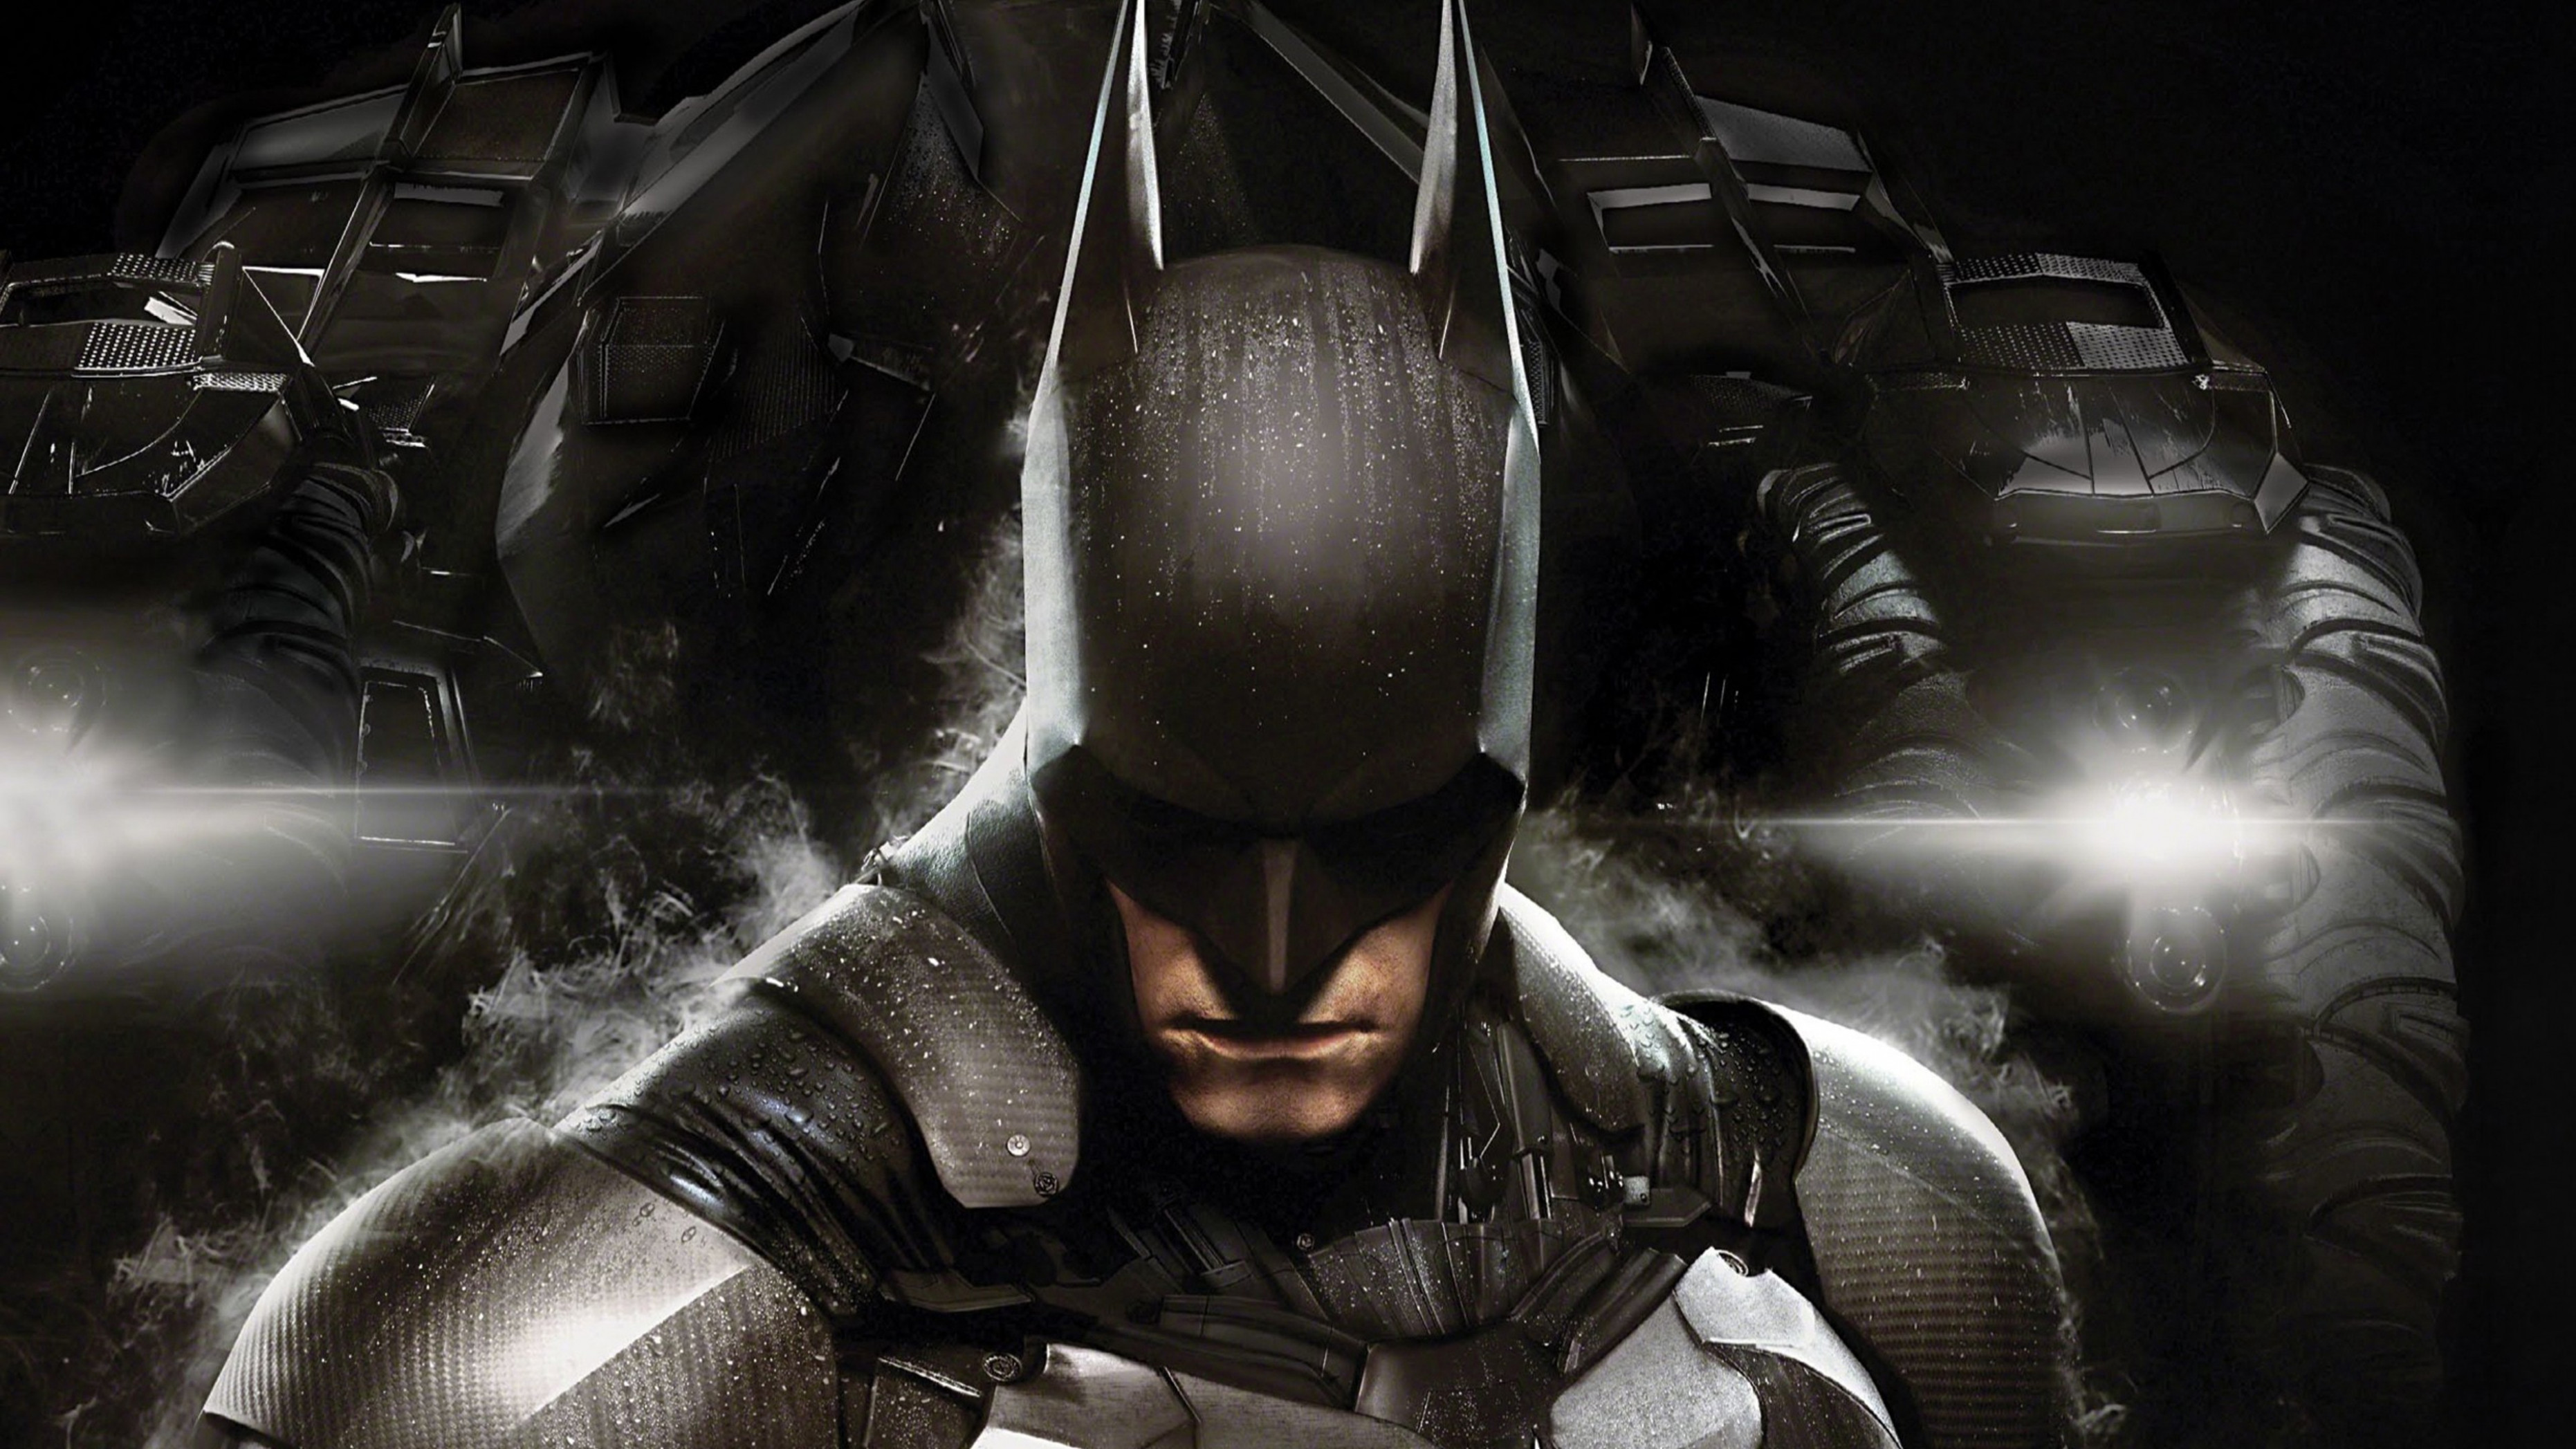 Batman Arkham Knight Full Hd, Hd Movies, 4k Wallpapers - Batman Injustice God Among Us - HD Wallpaper 